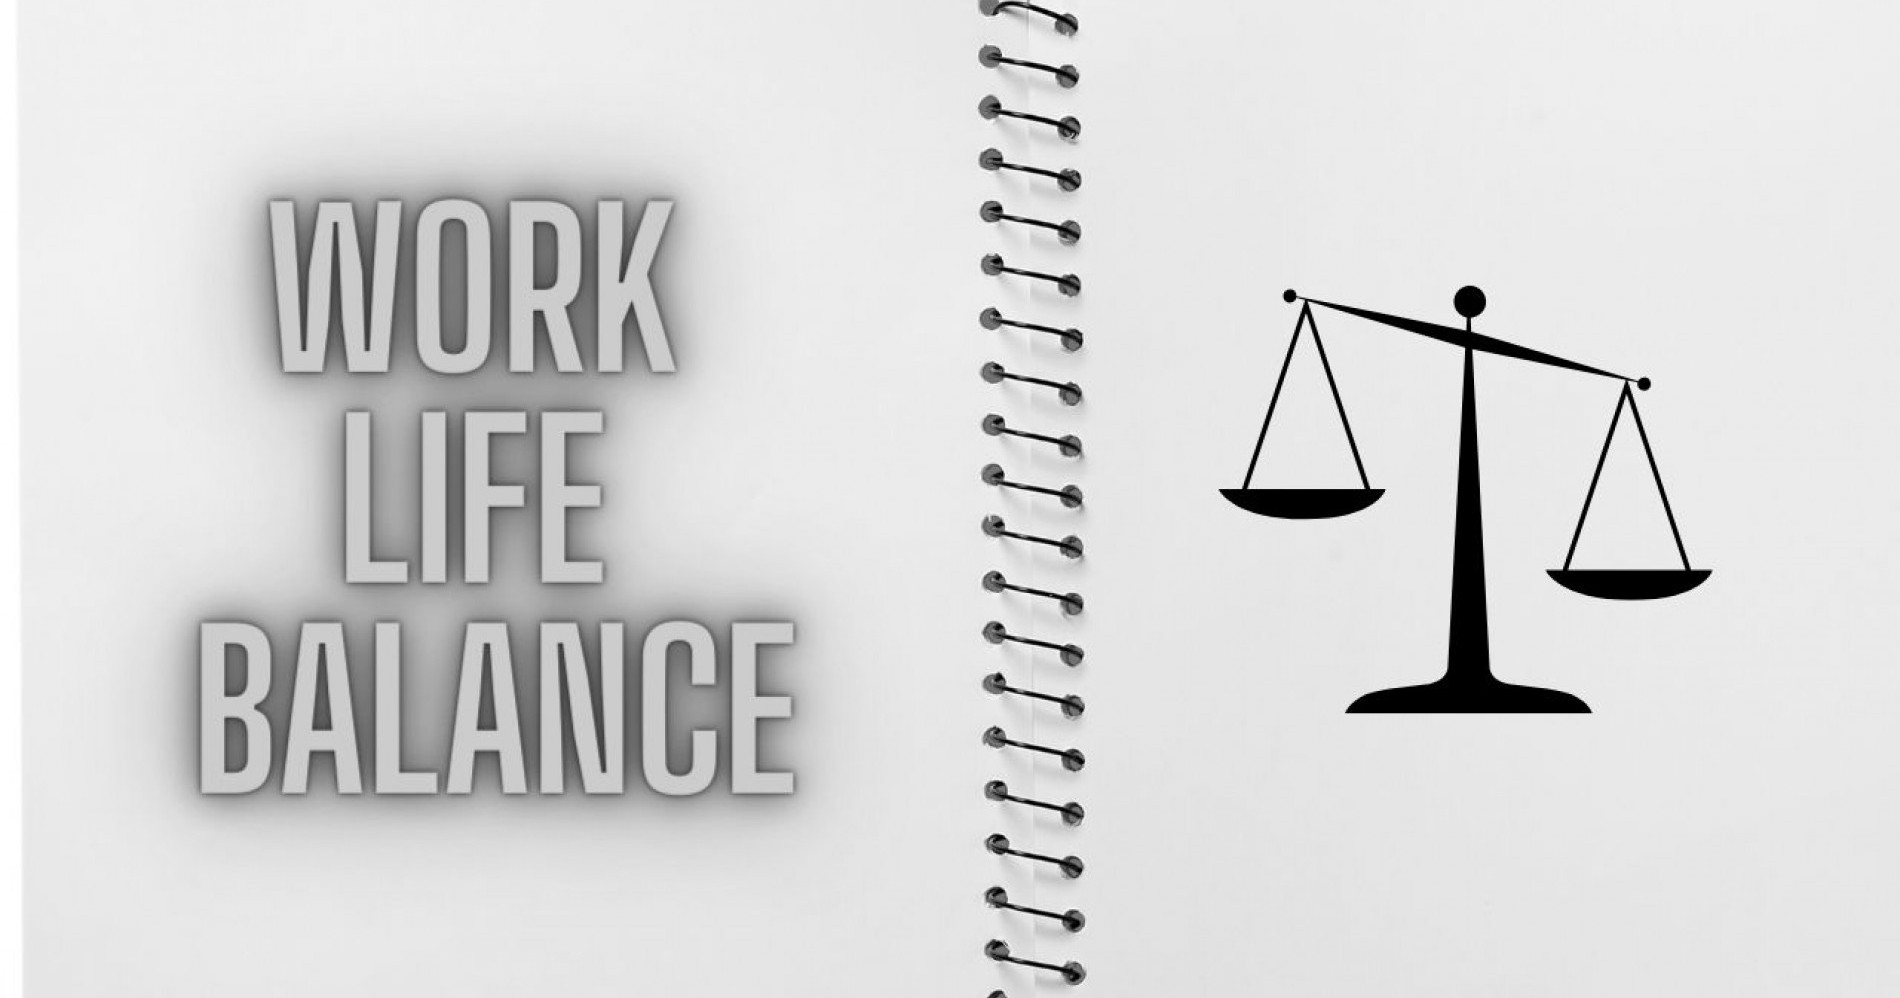 Jaga 6 Pola Hidup ini, Agar Work Life Balance Terjaga dan Tidak Mudah Burn Out saat Banyak Kerjaan. Image Canva